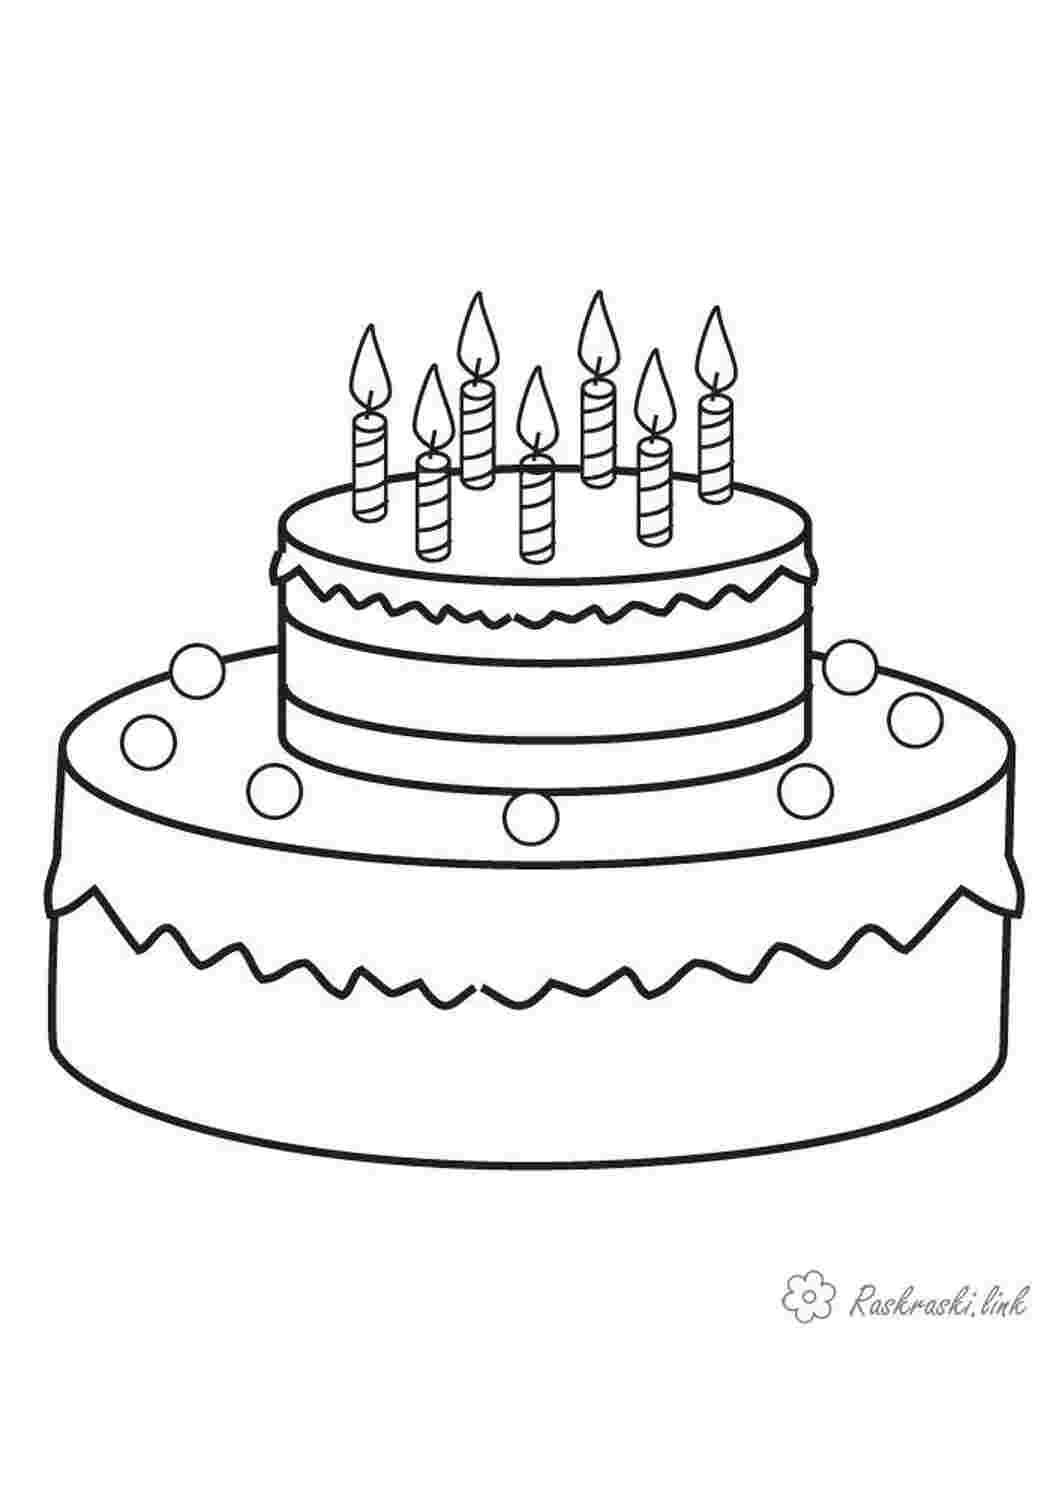 «С днём рождения!», открытка тактильная, «Торт» (15х15 см)